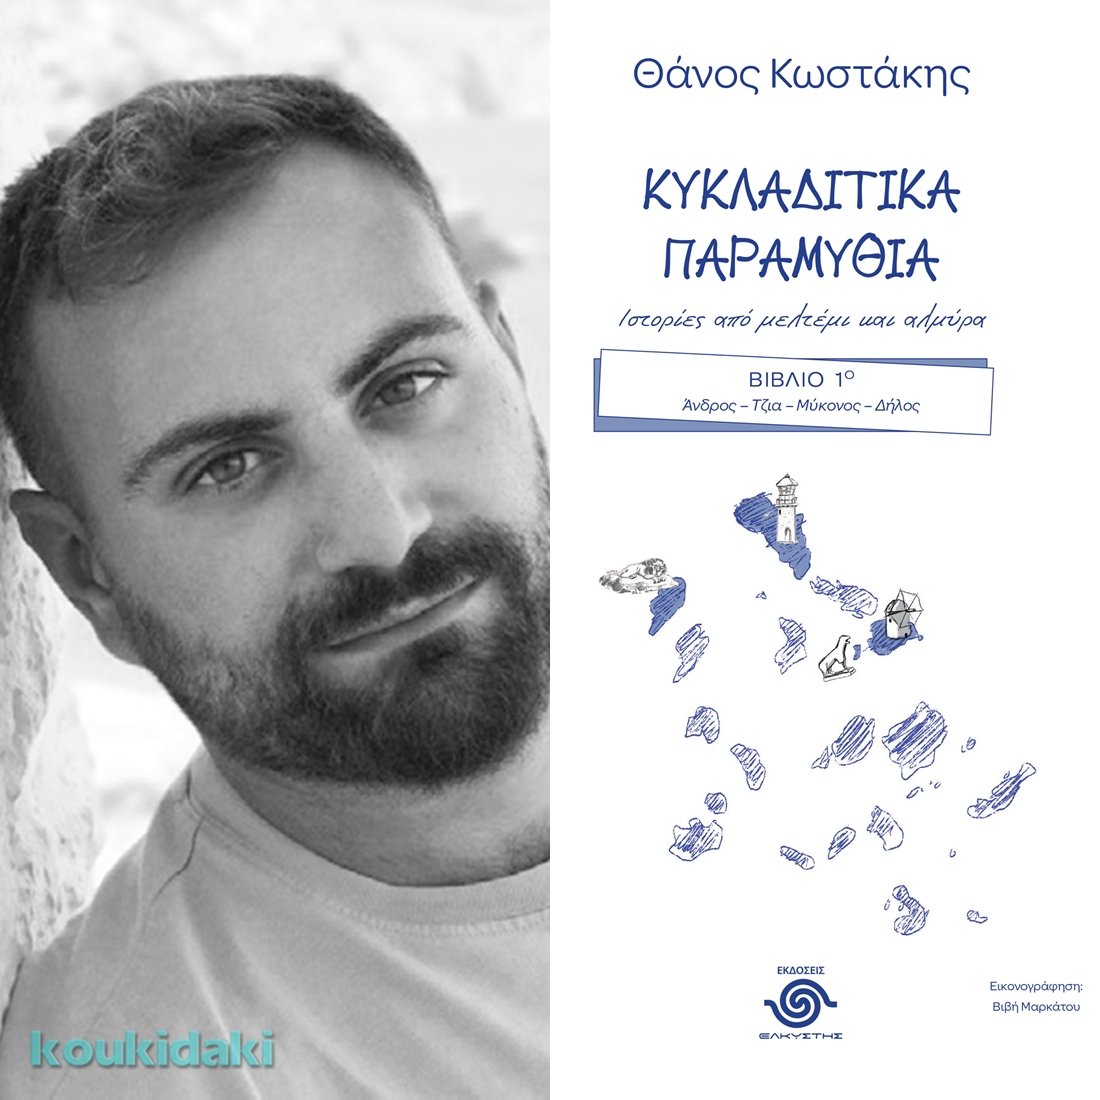 Ο Θάνος Κωστάκης σε μια συνέντευξη για το νέο του #βιβλίο, Κυκλαδίτικα παραμύθια: Ιστορίες από μελτέμι και αλμύρα, που θα διαβάσετε εδώ: koukidaki.gr/2023/01/kyklad…
Ταυτόχρονα, στον σύνδεσμο θα βρείτε και το #giveaway για δωρεάν αντίτυπο!

#koukidaki  #συνέντευξη #παιδικόβιβλίο